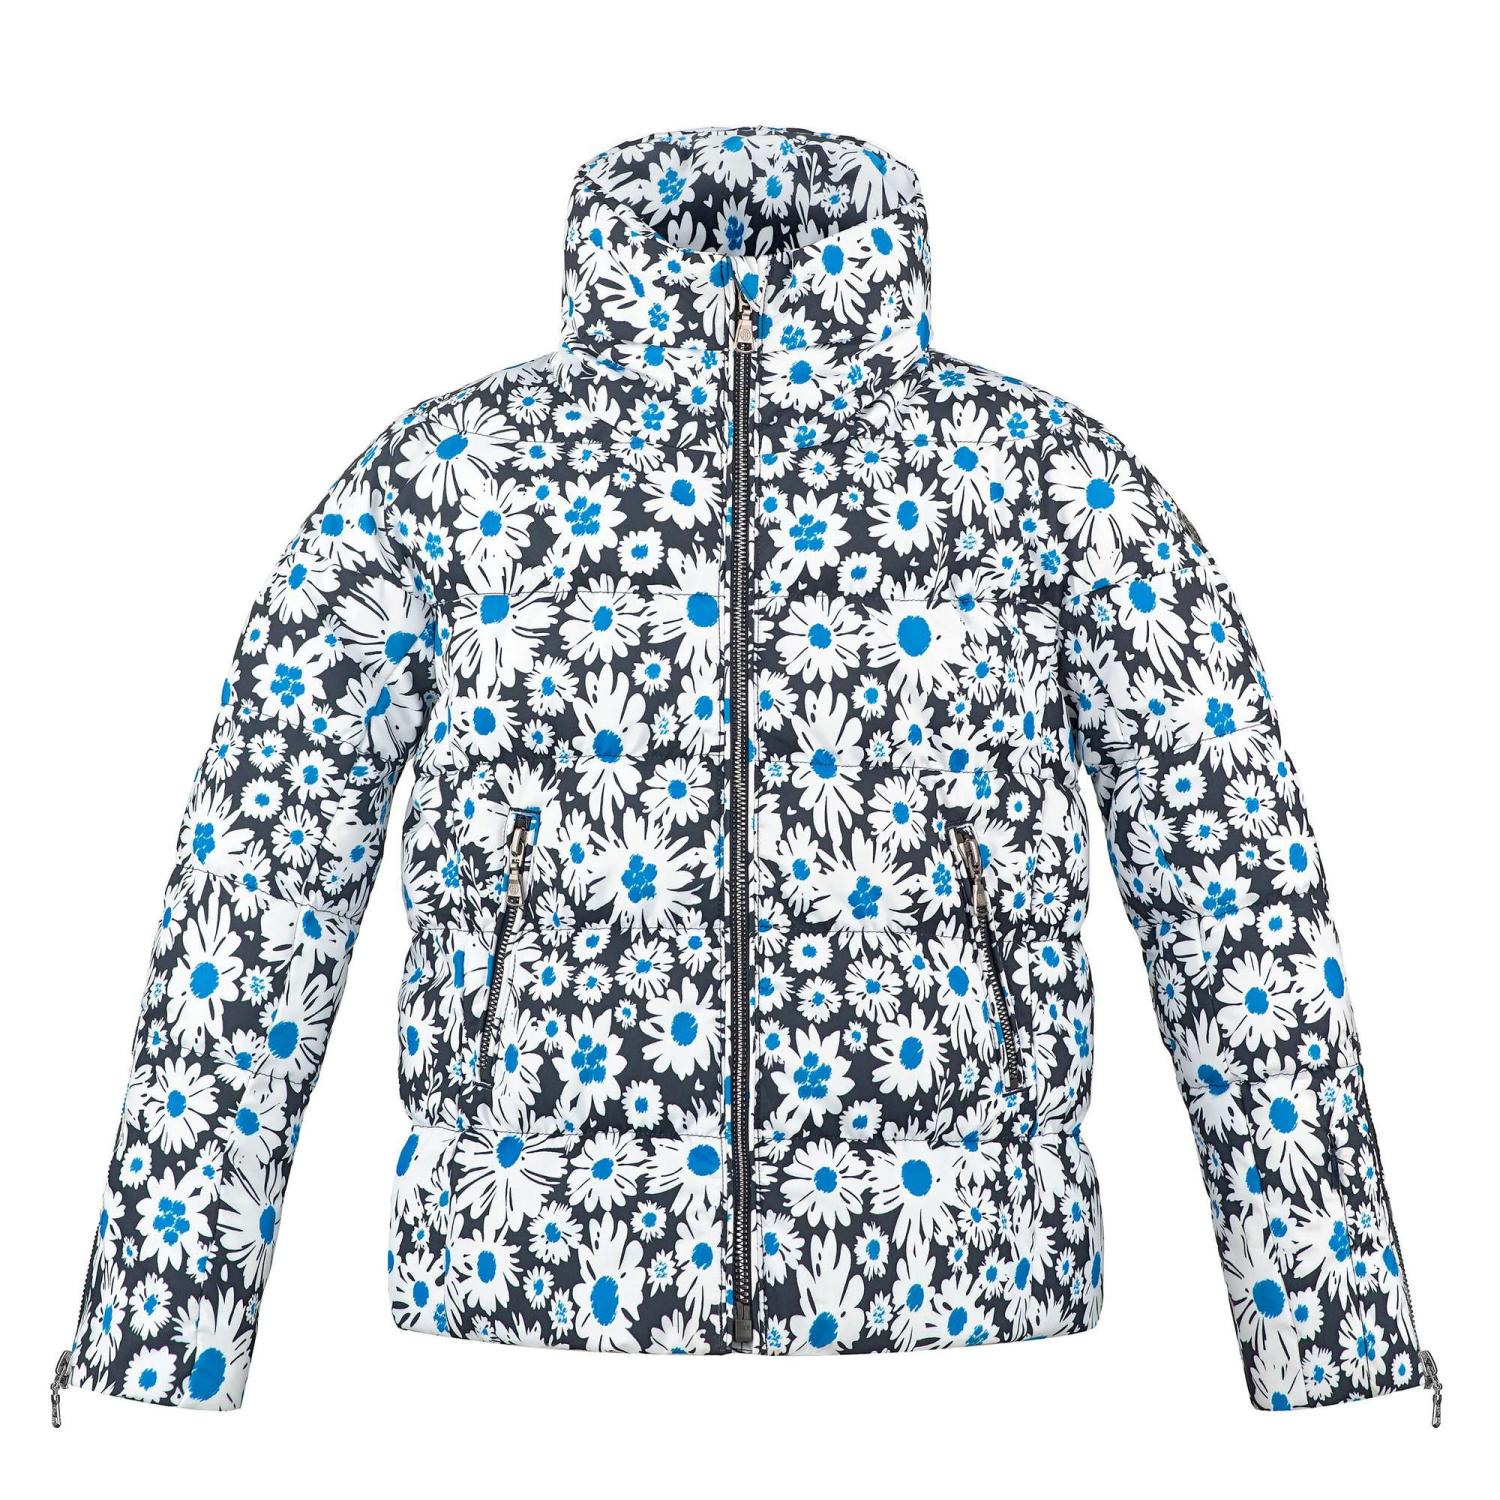 Куртка горнолыжная Poivre Blanc 20-21 Synthetic Down Jacket Jr Daisy Blue куртка горнолыжная poivre blanc 20 21 ski jacket mineral grey